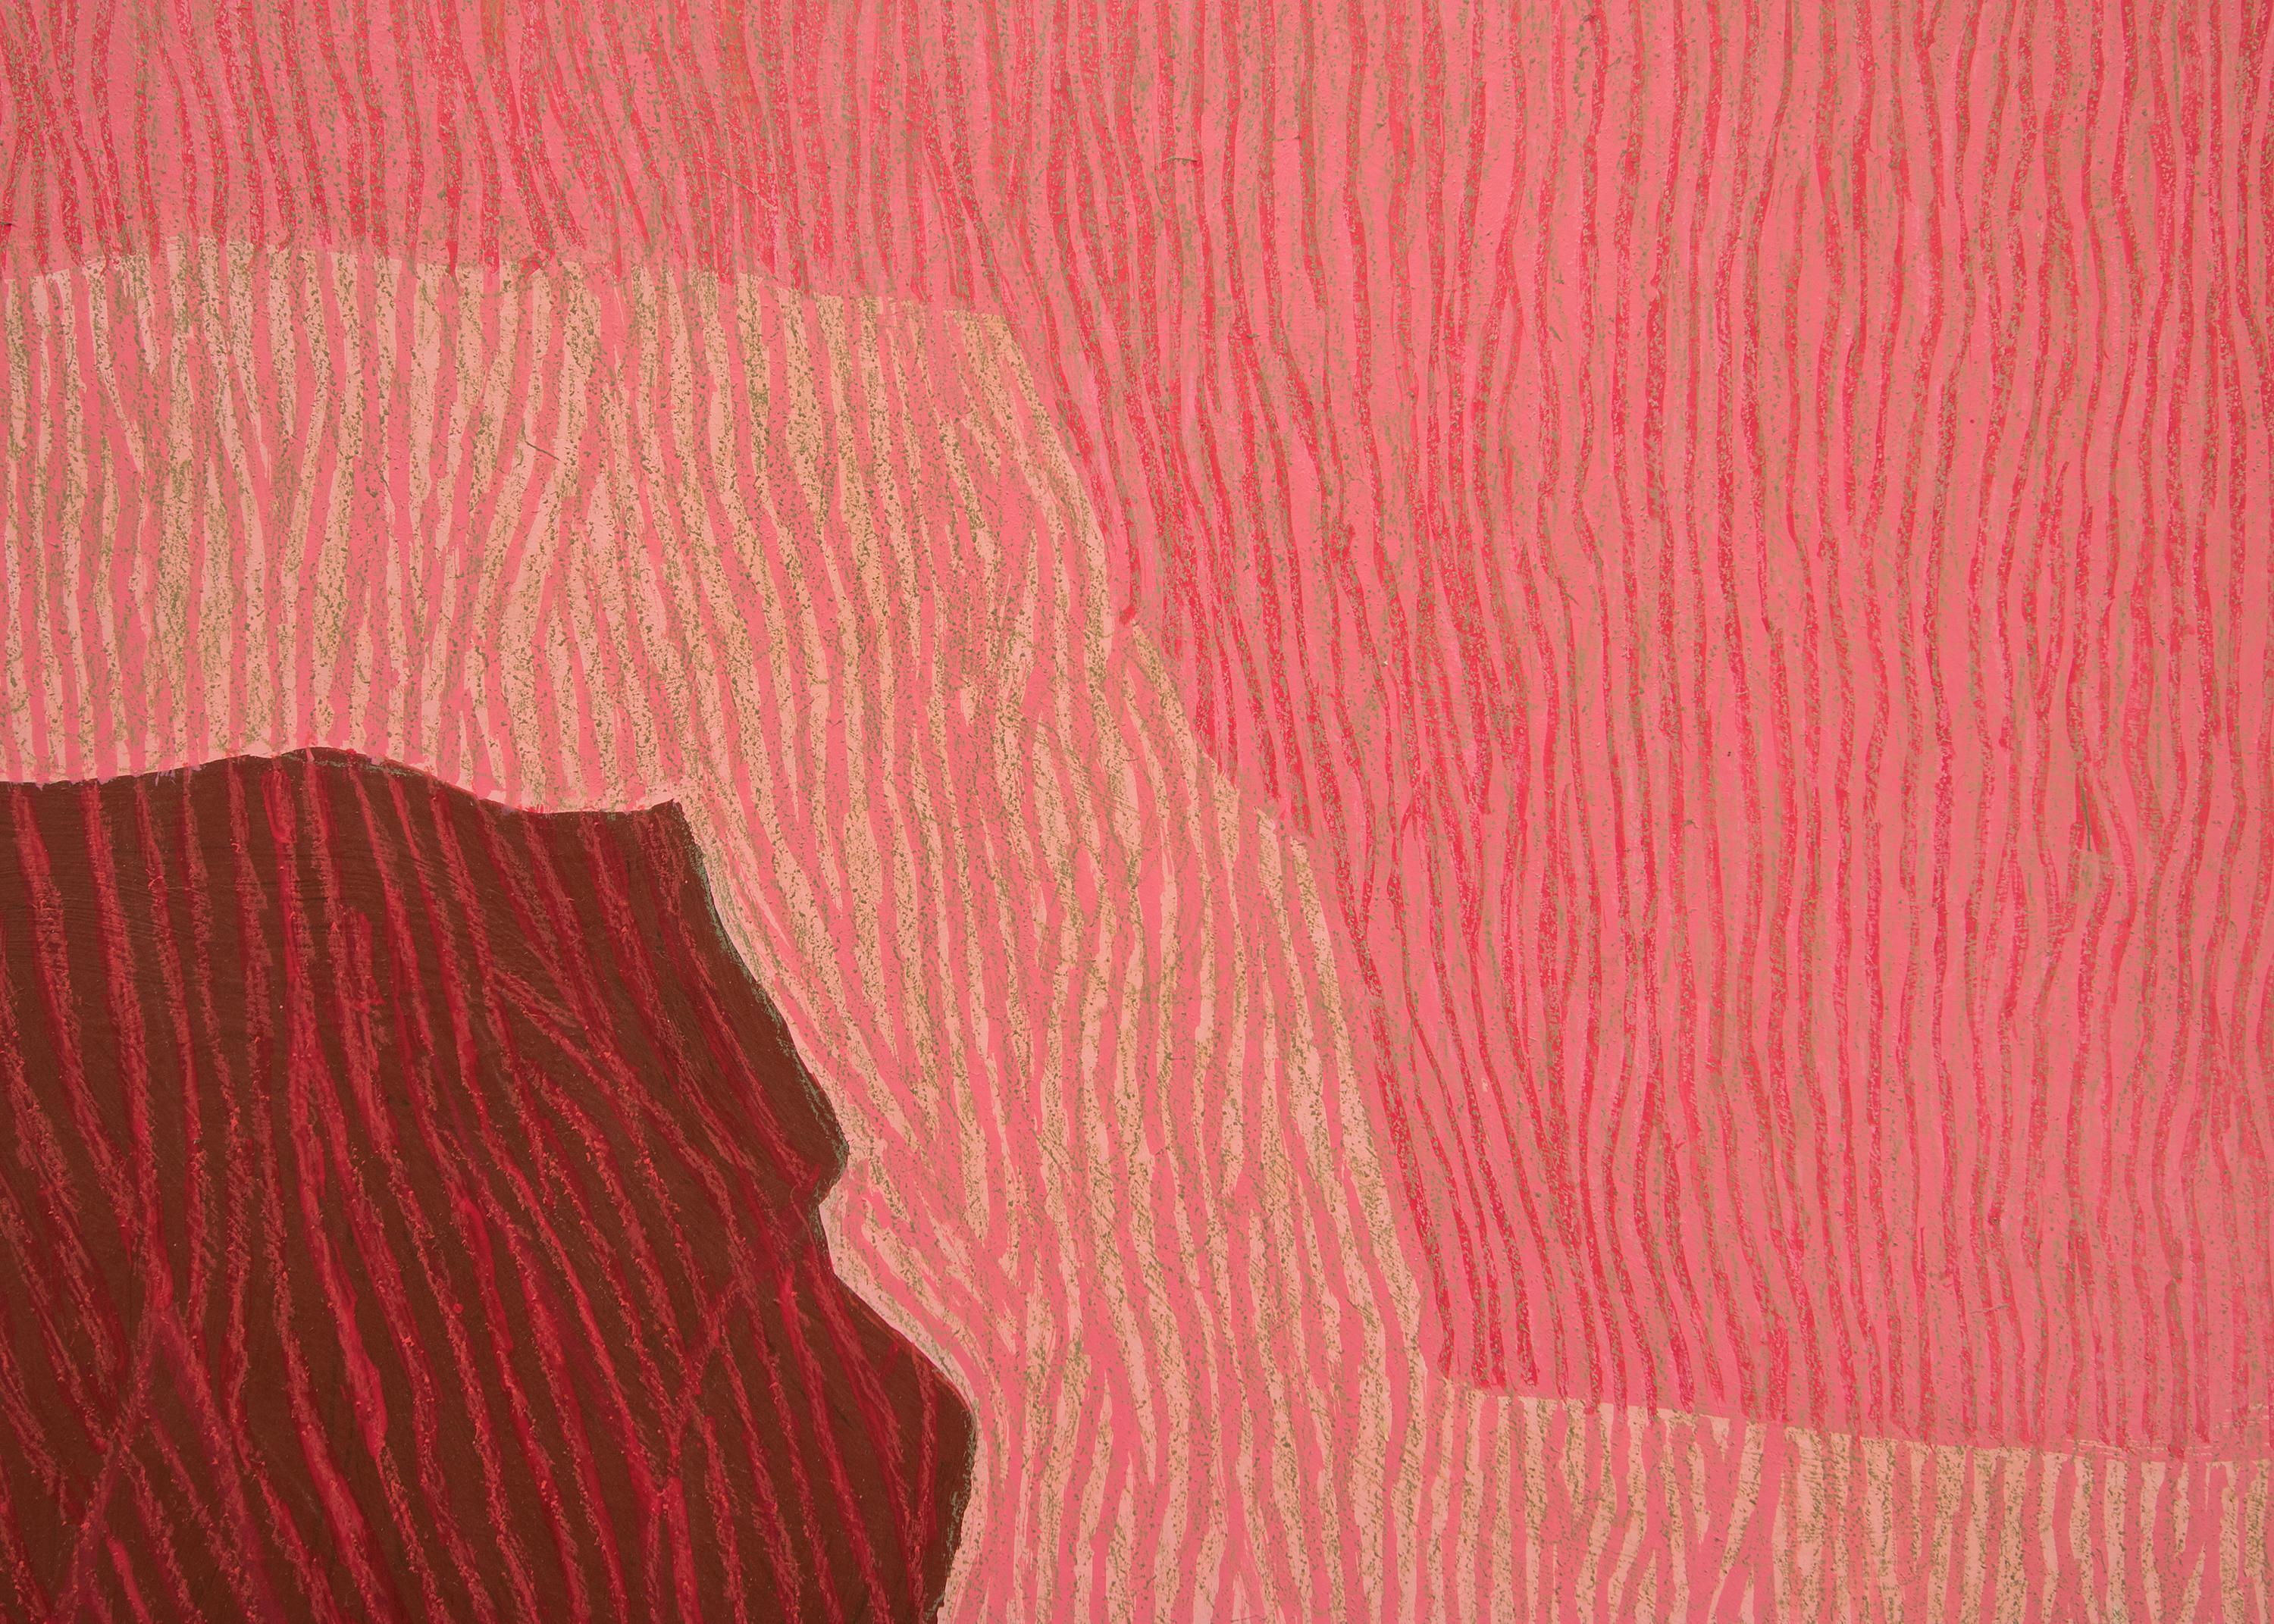 CIRCA 1968 abstraktes Öl und Buntstift auf Karton der Künstlerin Margo Hoff (1910-2008), Nachlassstempel verso. Abstrahierte Klippenszene in Rot-, Rosa- und Grautönen gemalt. Präsentiert in einem benutzerdefinierten Rahmen, äußeren Abmessungen